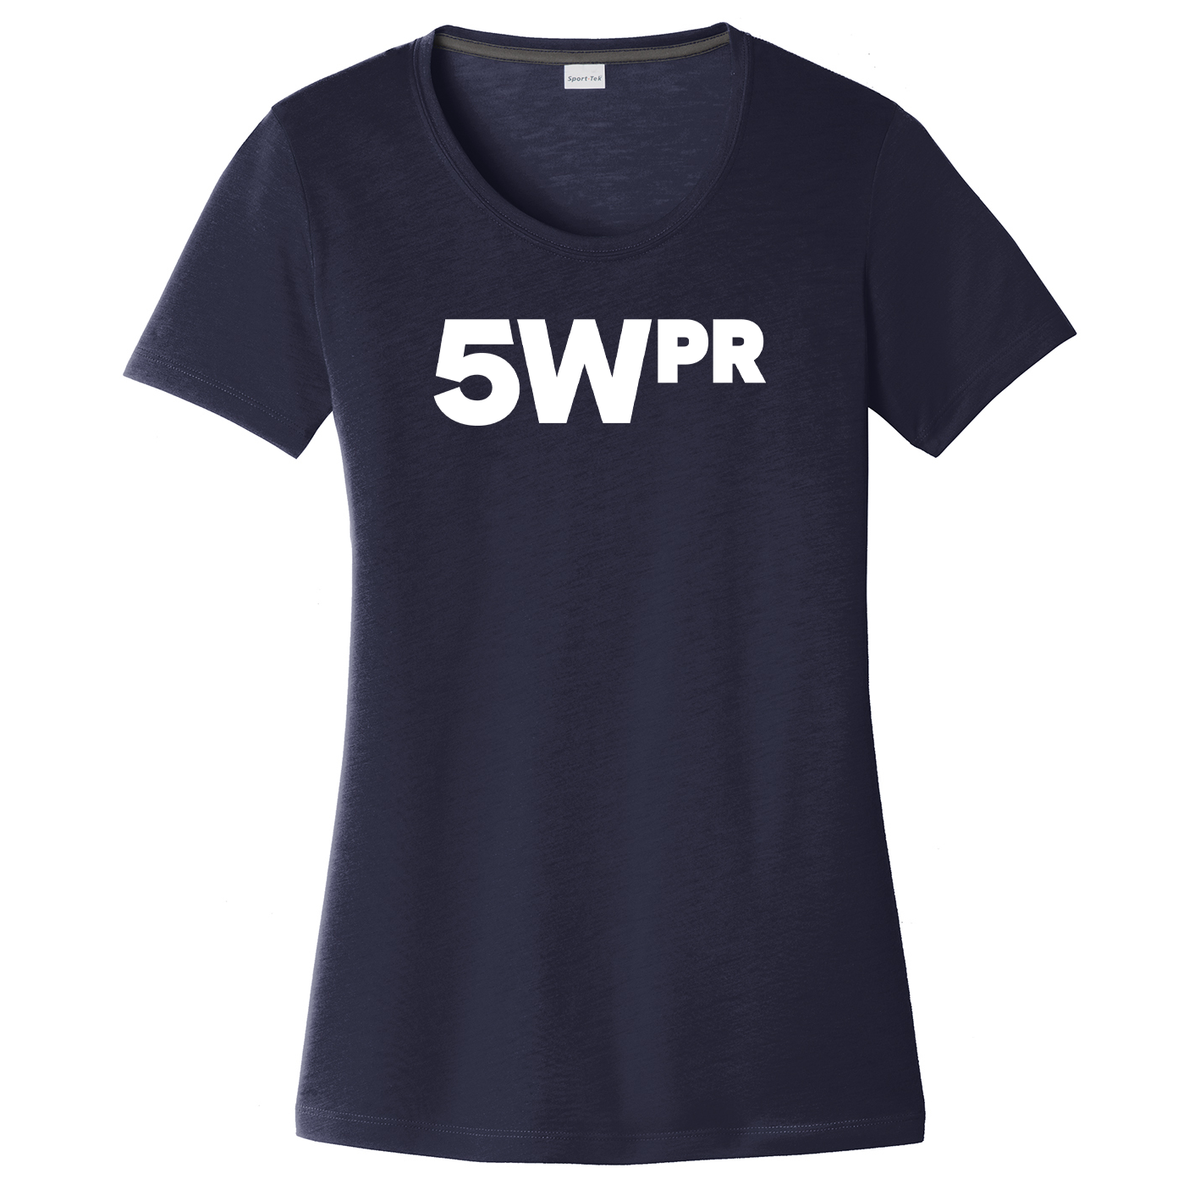 5WPR Women's CottonTouch Performance T-Shirt